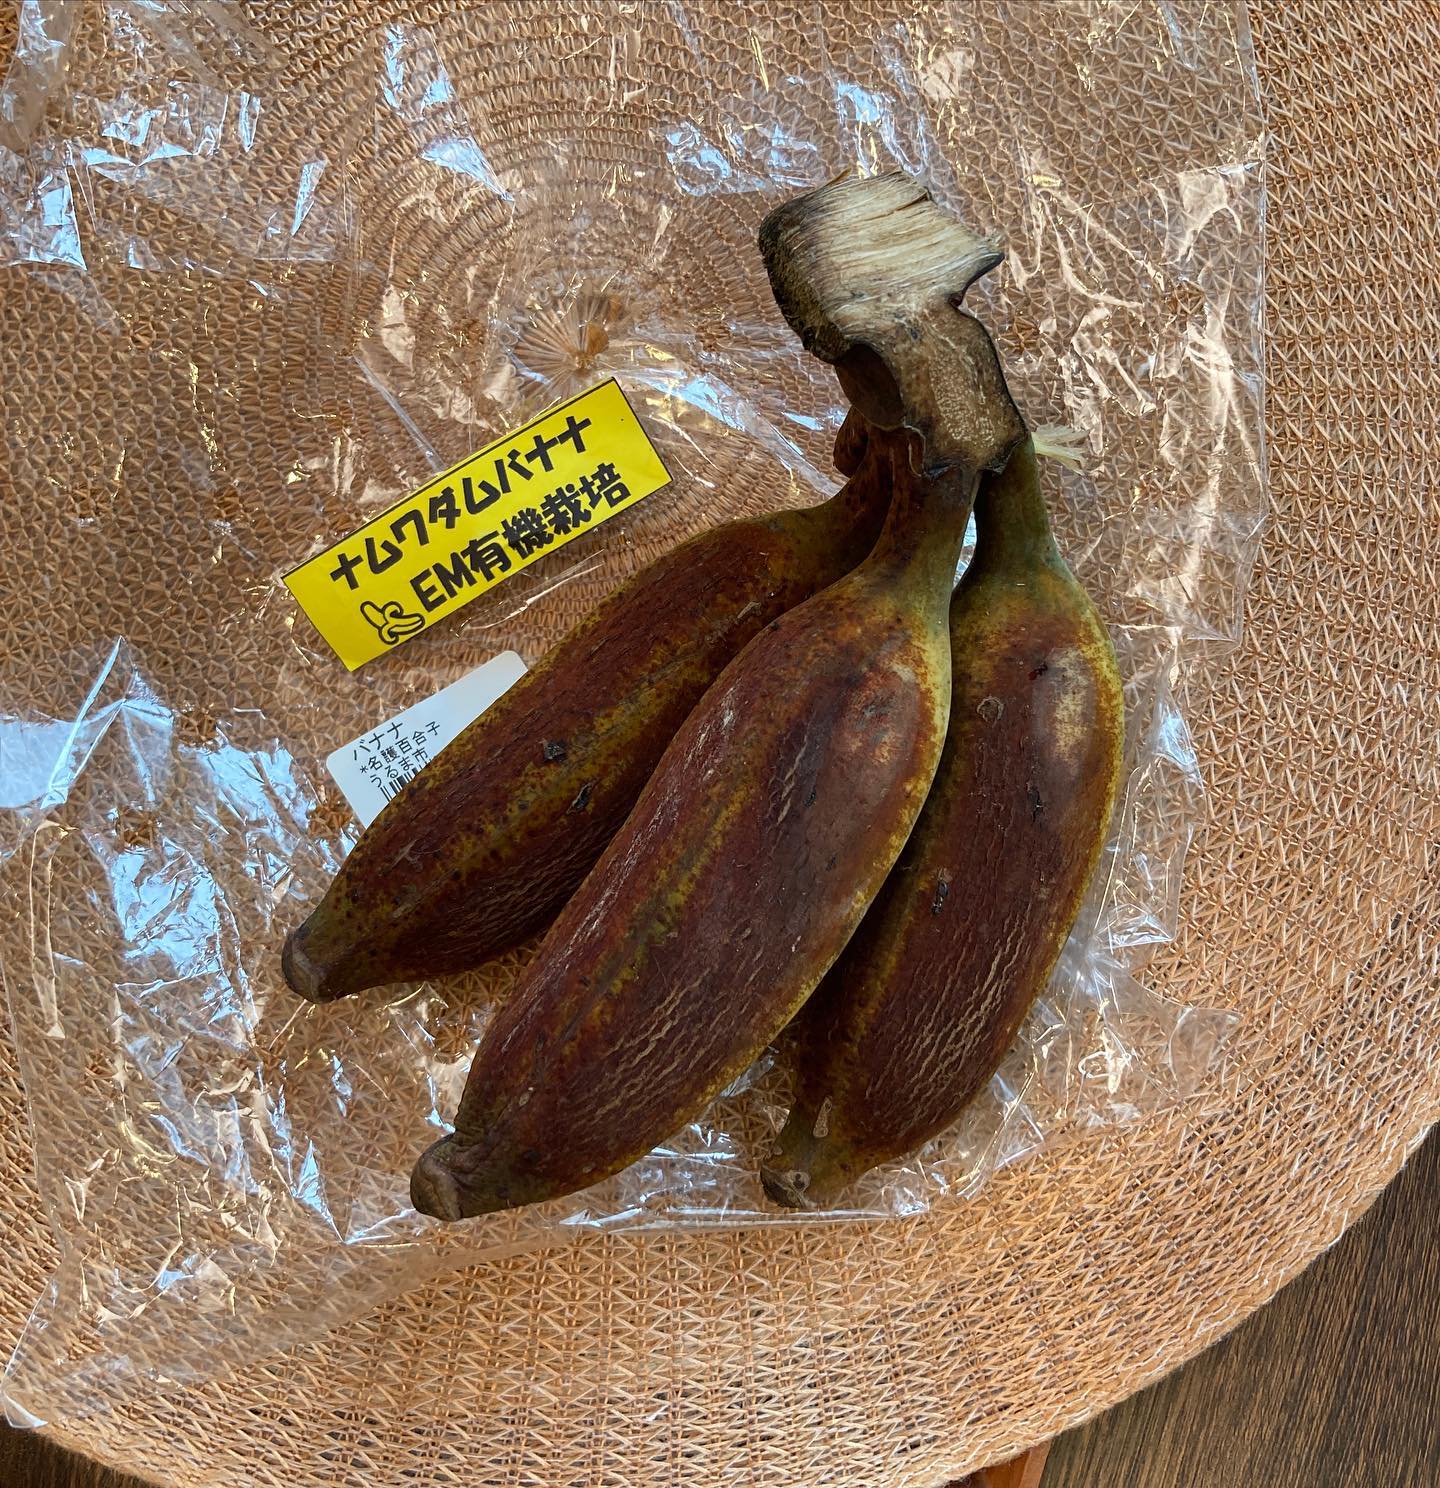 沖縄で大好きなバナナに出会った。甘甘すぎず、爽やかな酸味とむっちりな果肉。また食べたい。 (Instagram)